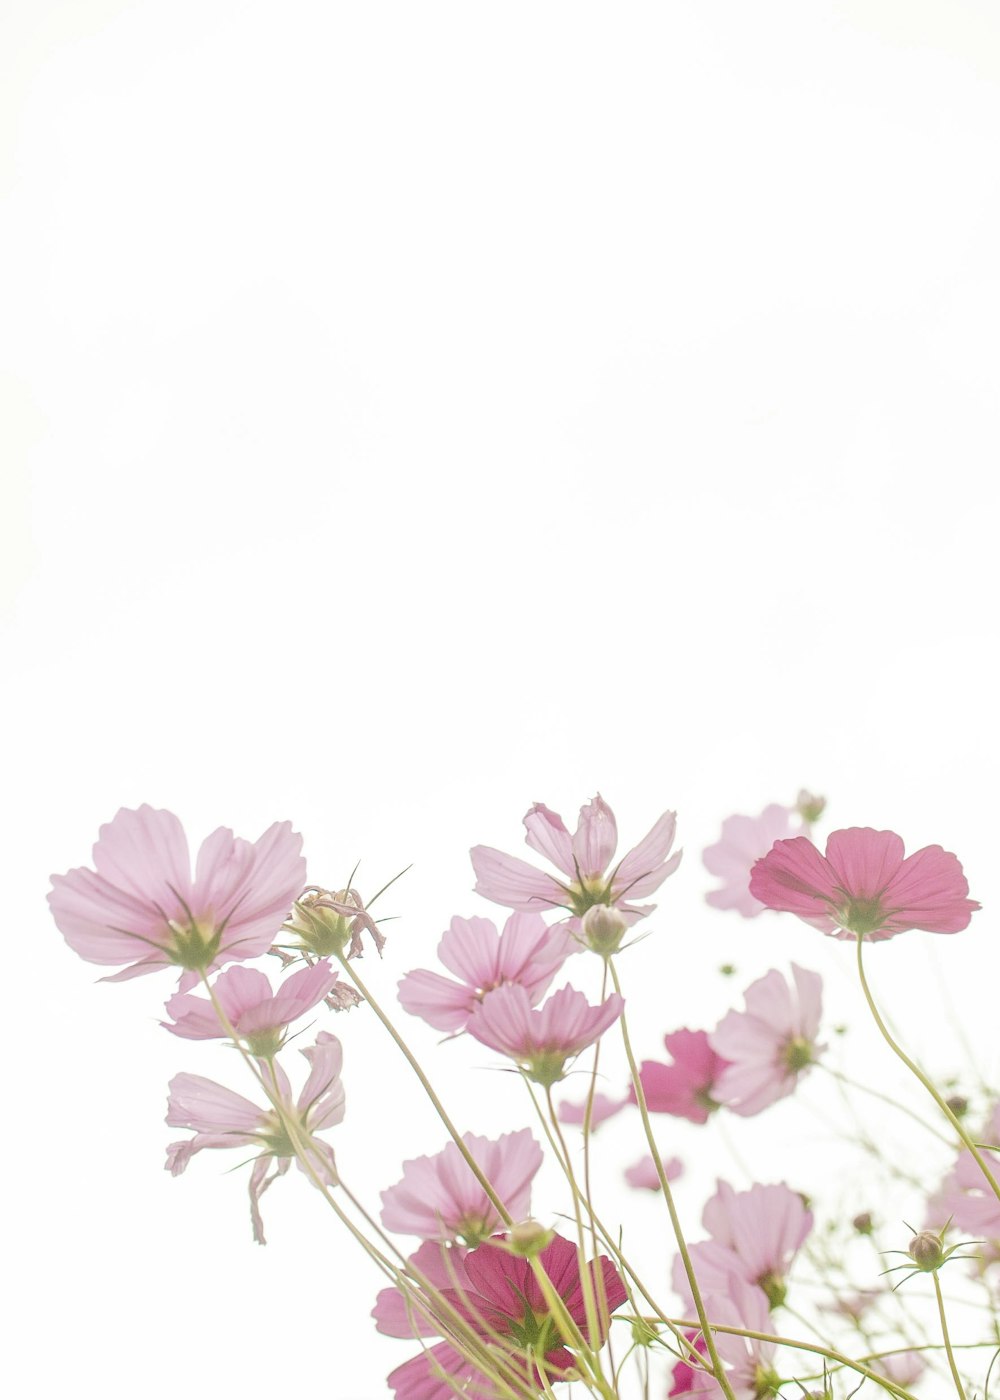 꽃병에 분홍색 꽃 한 무리